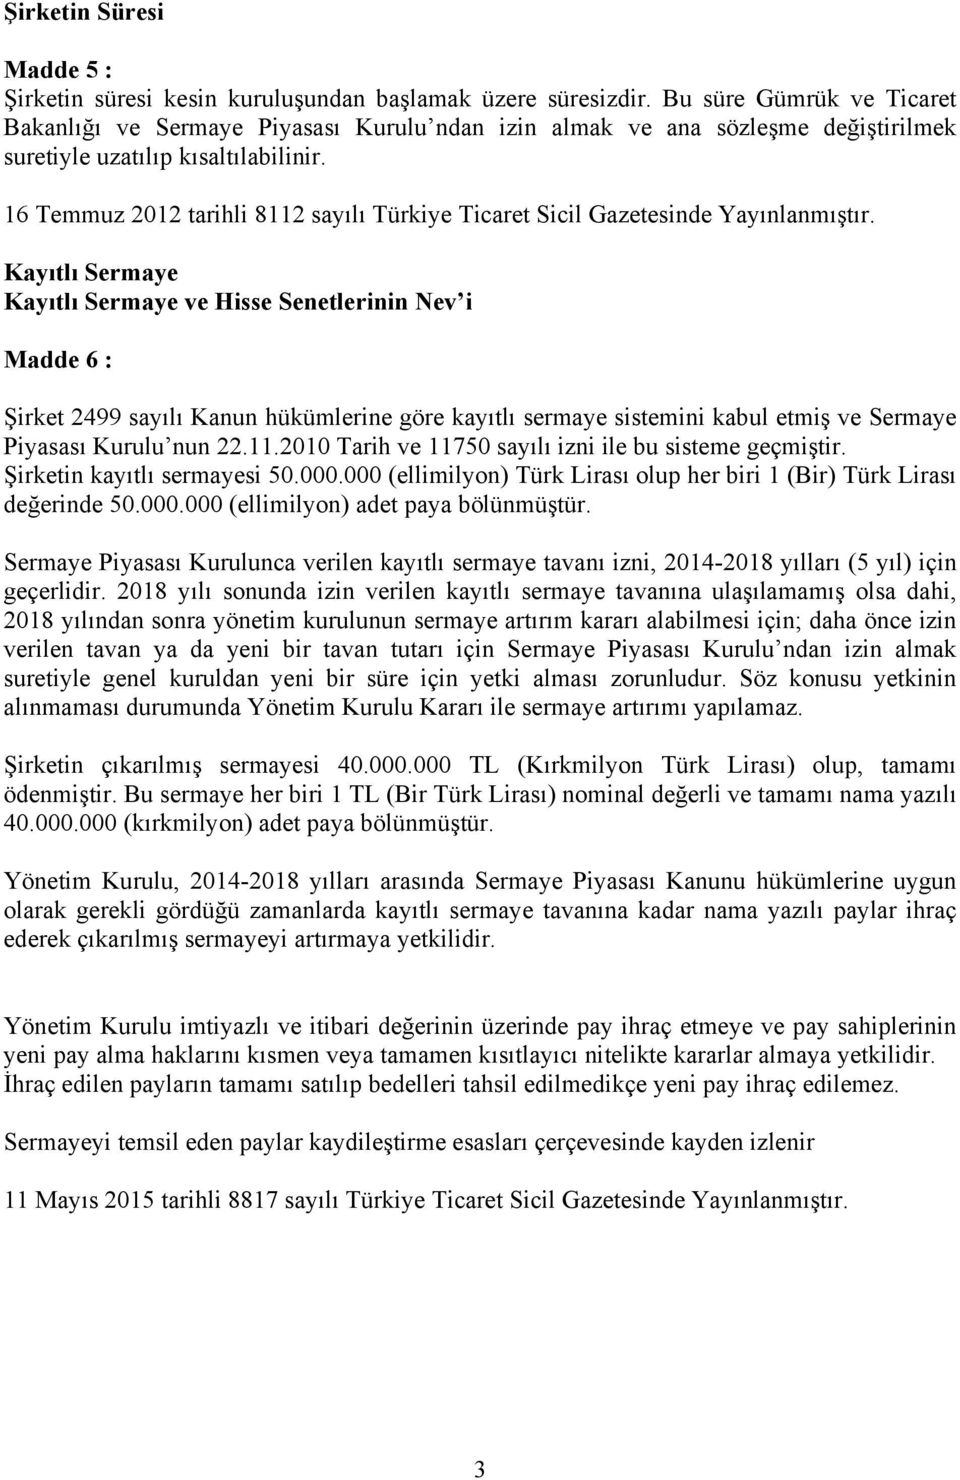 16 Temmuz 2012 tarihli 8112 sayılı Türkiye Ticaret Sicil Gazetesinde Yayınlanmıştır.